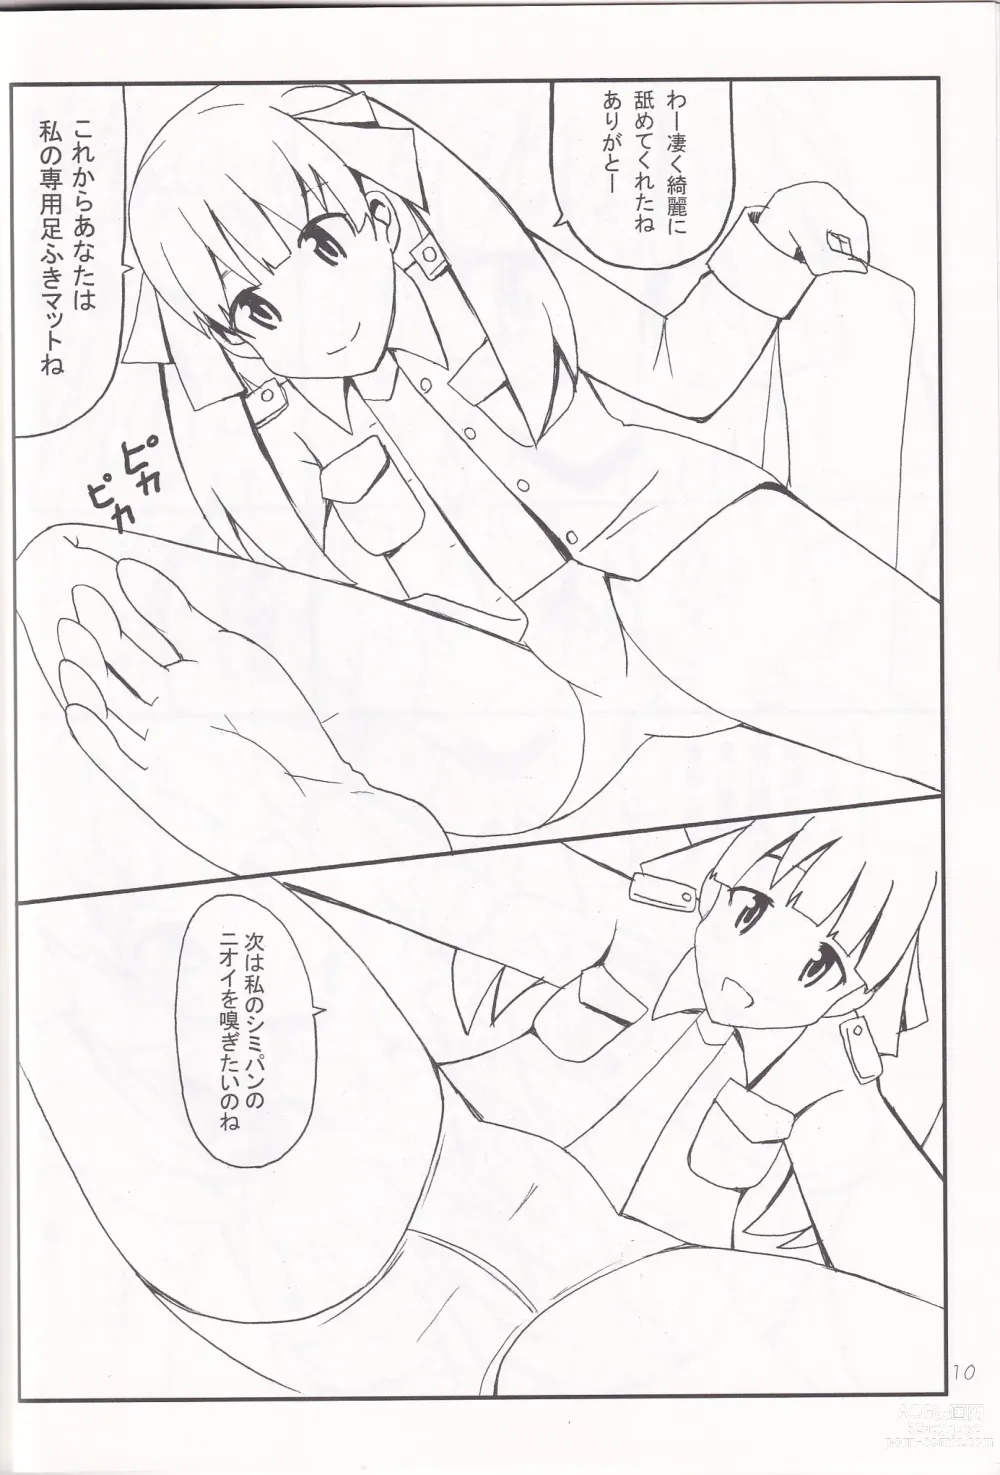 Page 9 of doujinshi Ashi no Ura